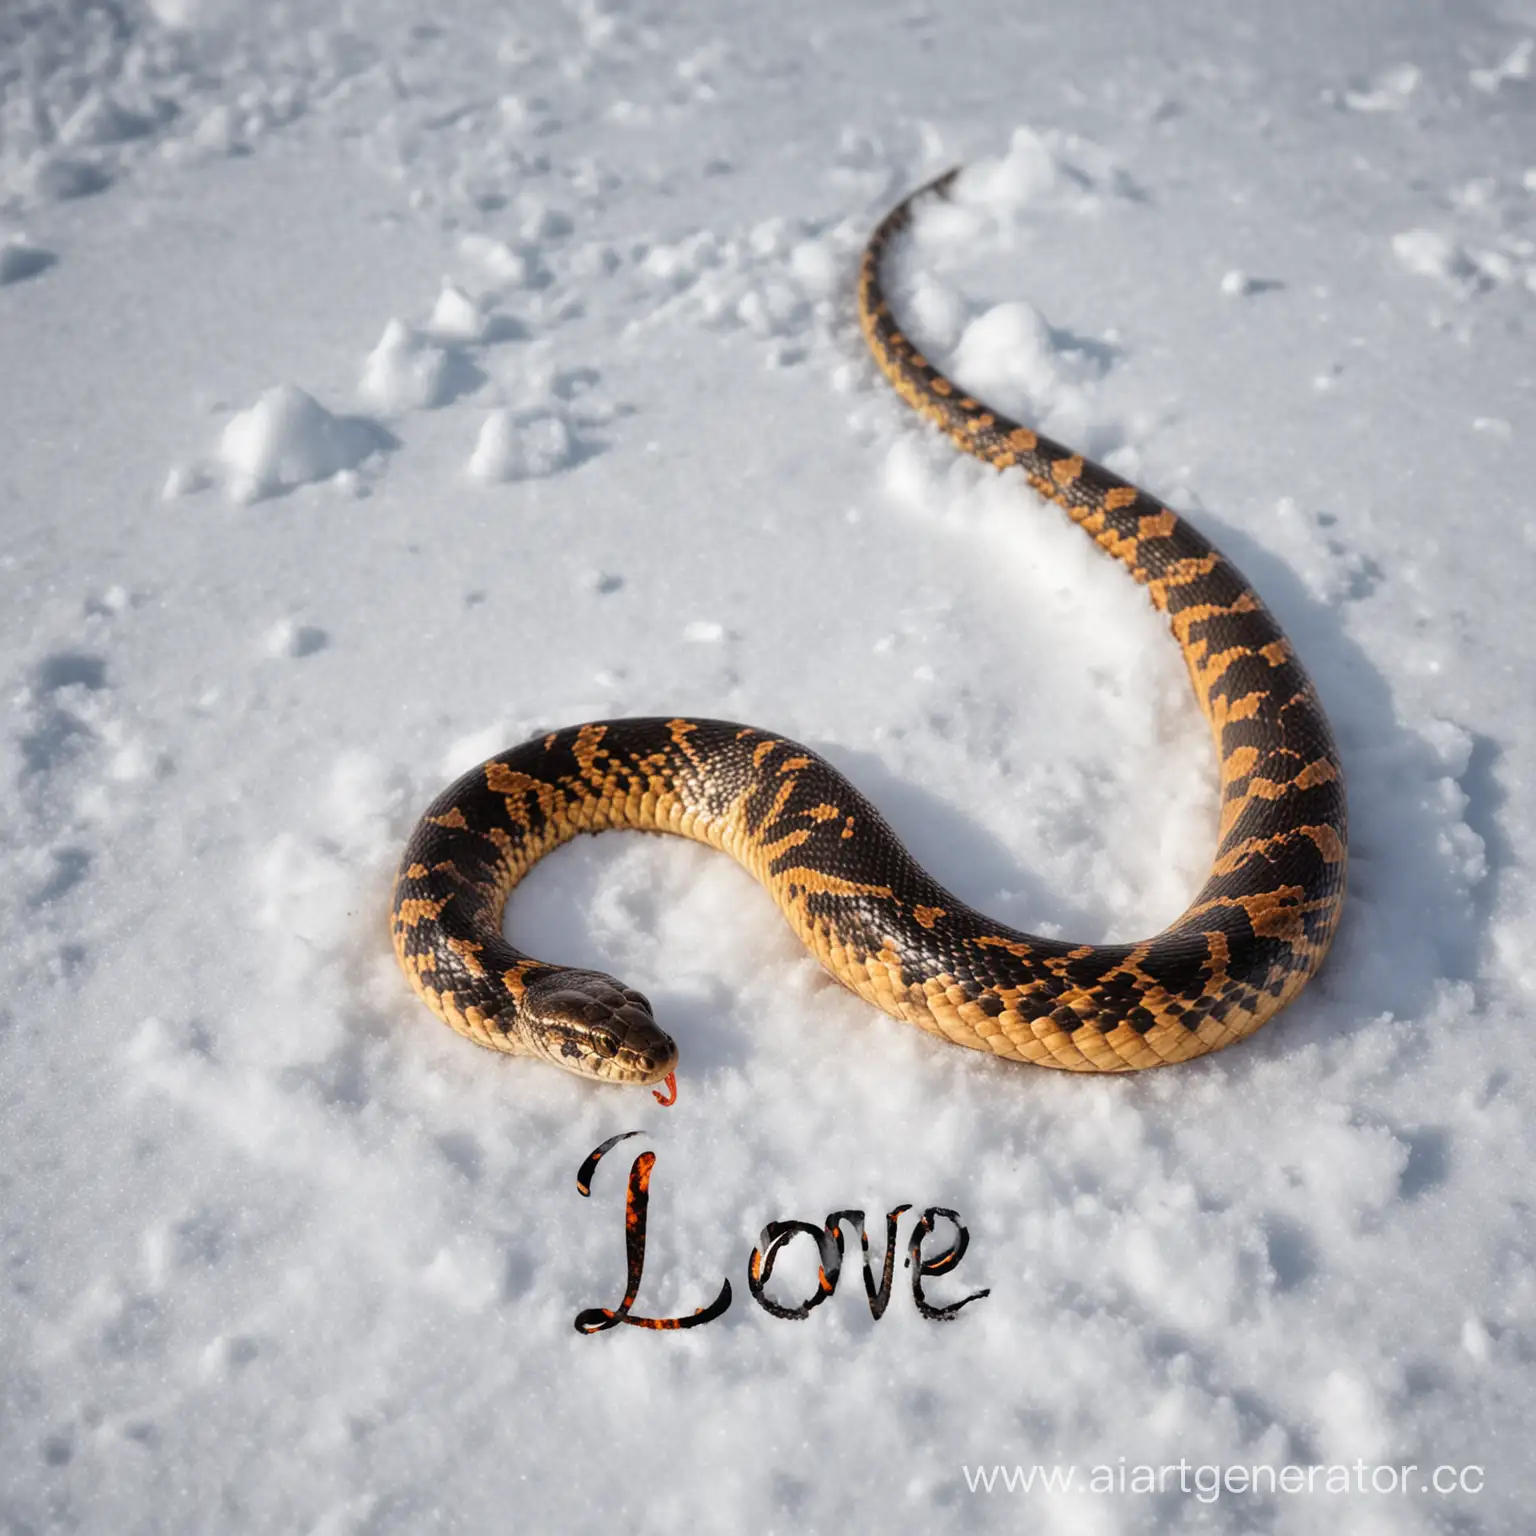 Fiery-Serpent-Professing-Love-in-Snowy-Landscape